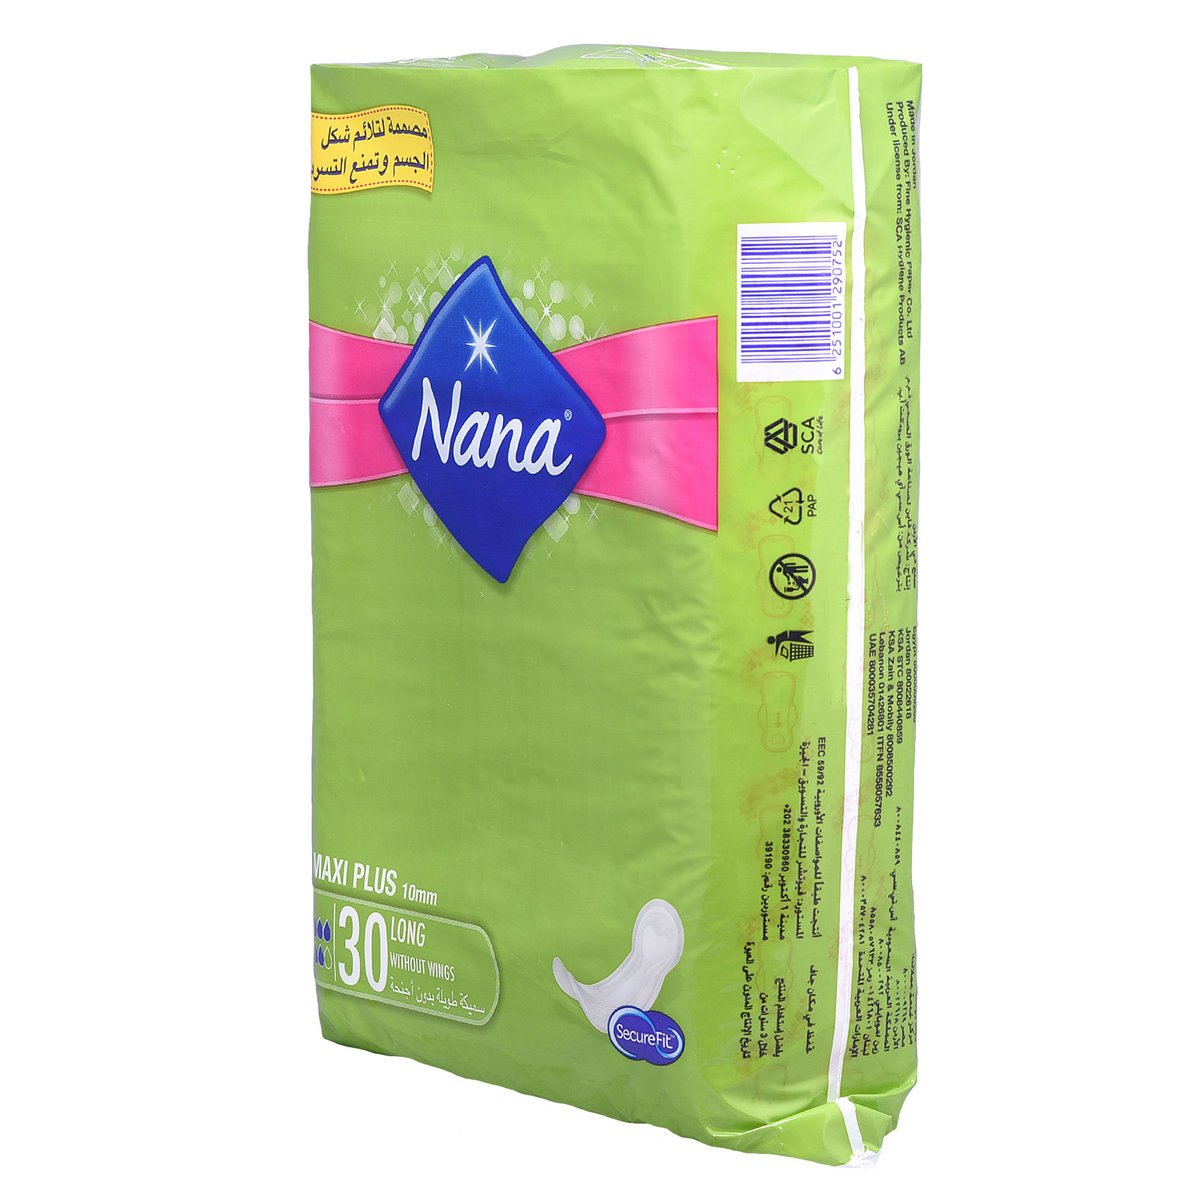 Nana Extra Thick Maxi Plus No Wings 30pcs